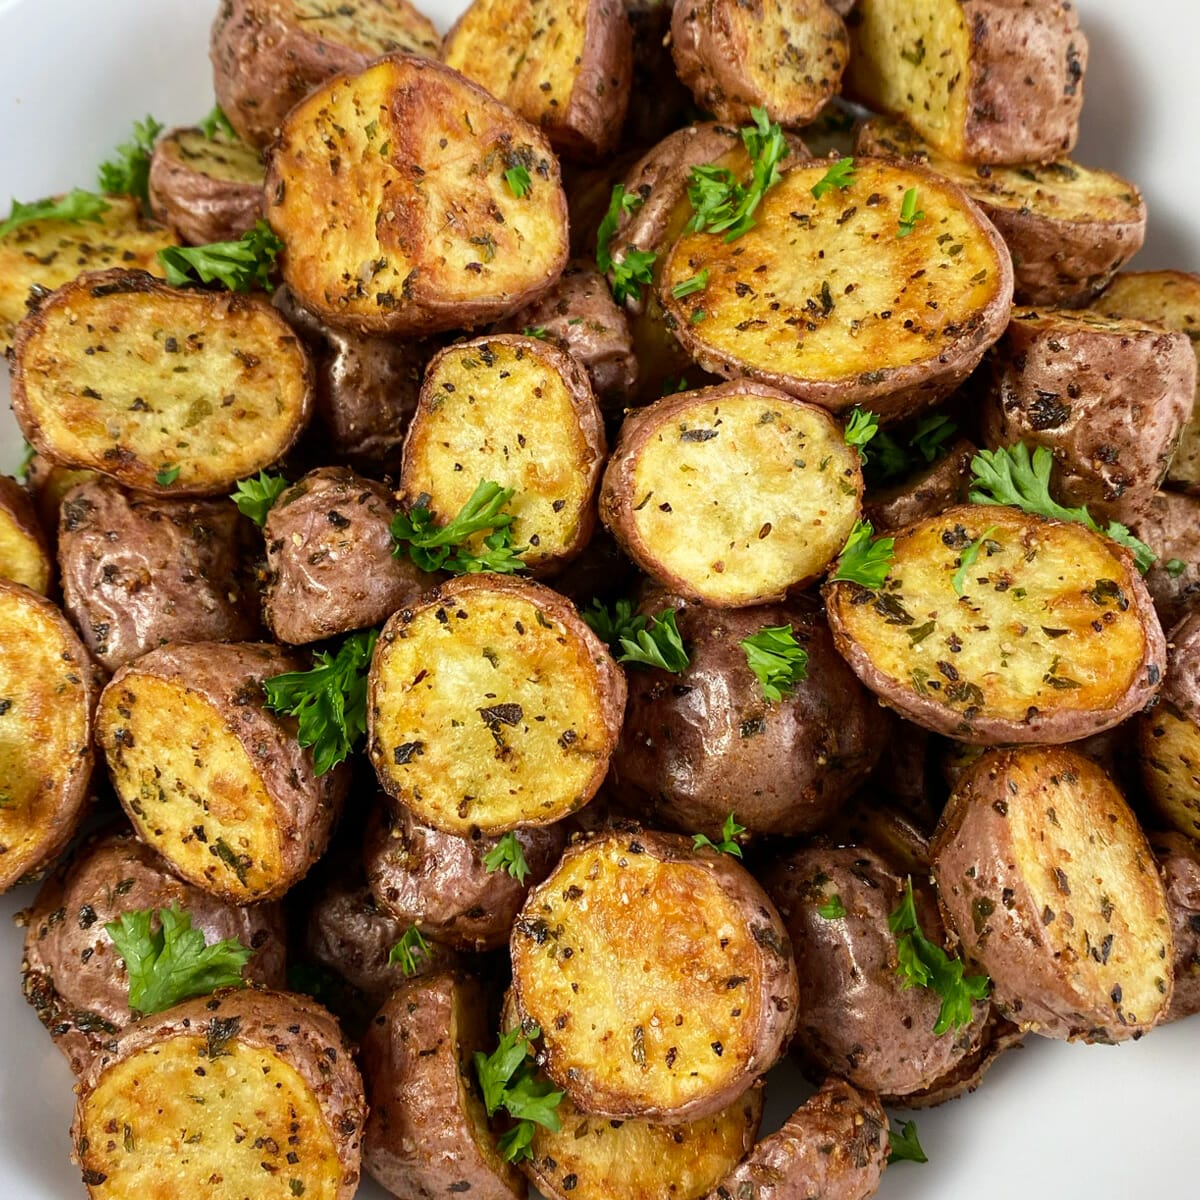 https://evuecezehrh.exactdn.com/wp-content/uploads/2021/02/irresistible-air-fryer-garlic-herb-potatoes-feature.jpg